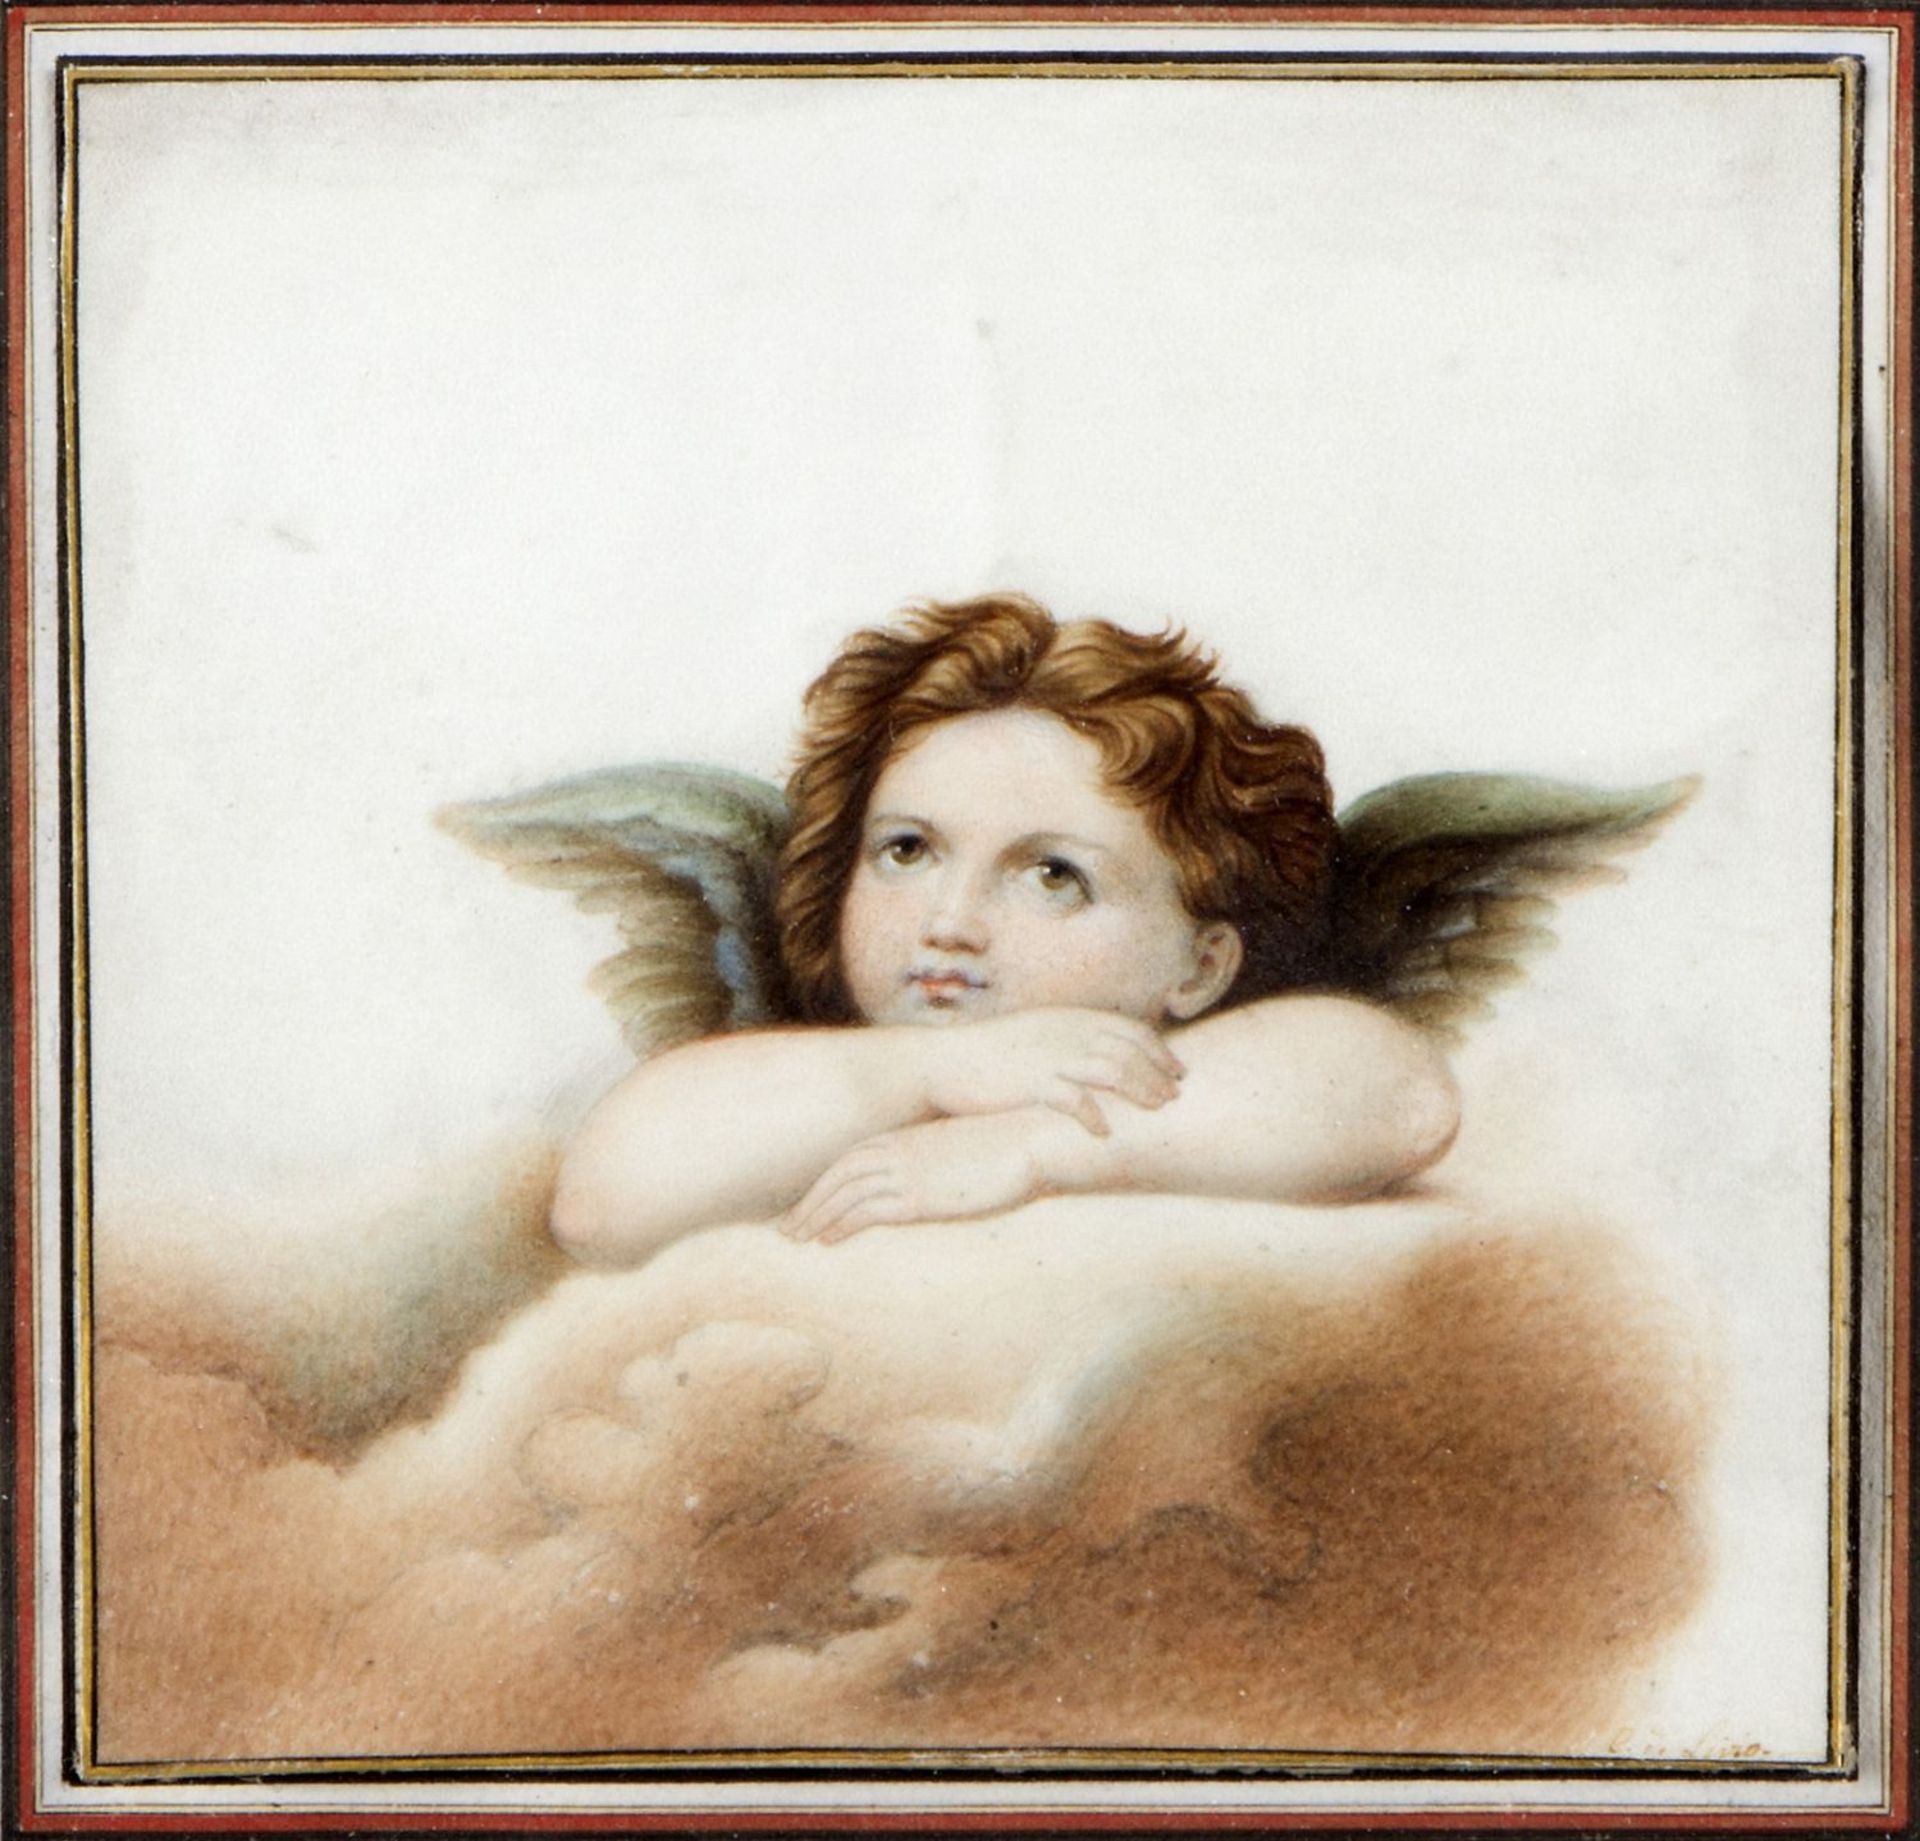 Livio, C. de Putto nach dem in der sixtinischen Kapelle. Aquarell über Bleistift. Sign. 12,5 x 13 cm